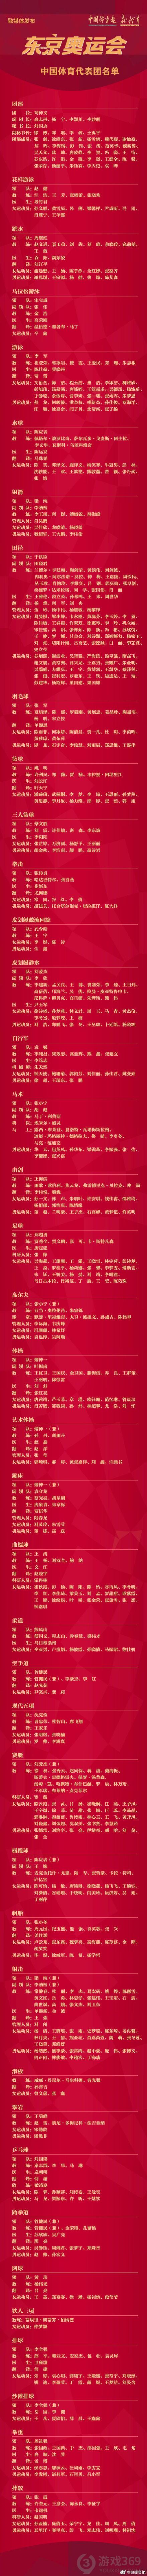 东京奥运会中国代表团名单介绍 东奥会中国运动员名单汇总